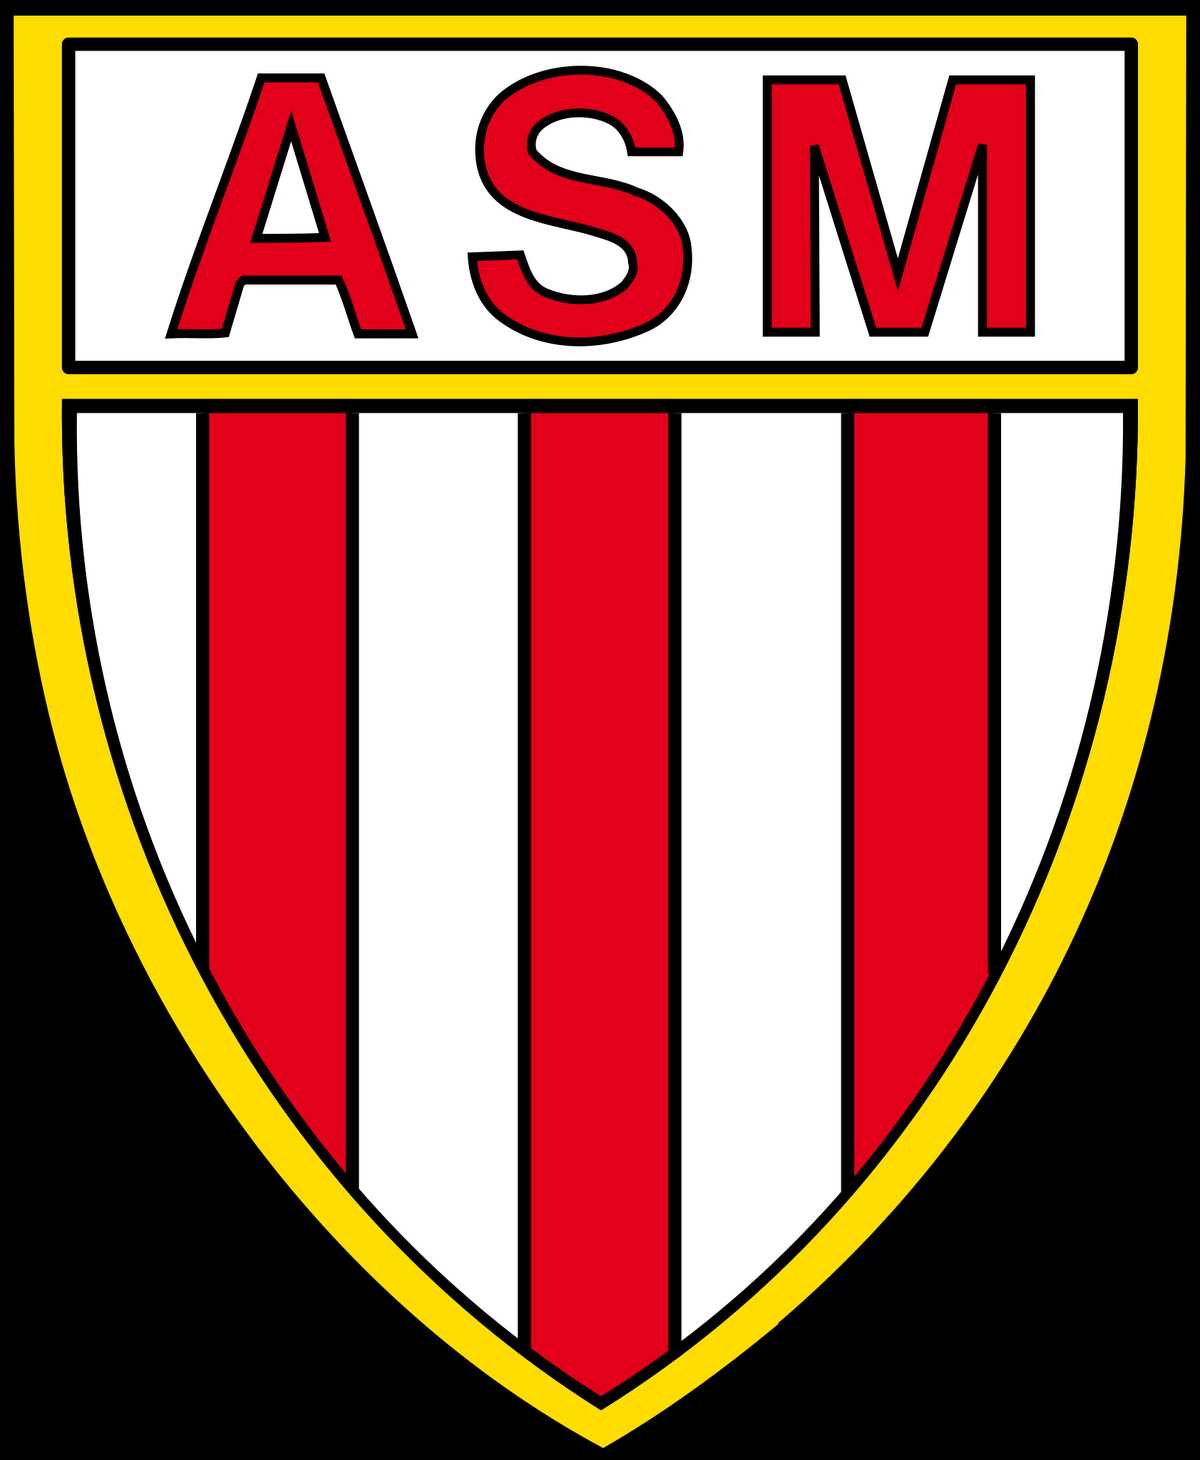 Les formes et les symboles dans le logo de Monaco